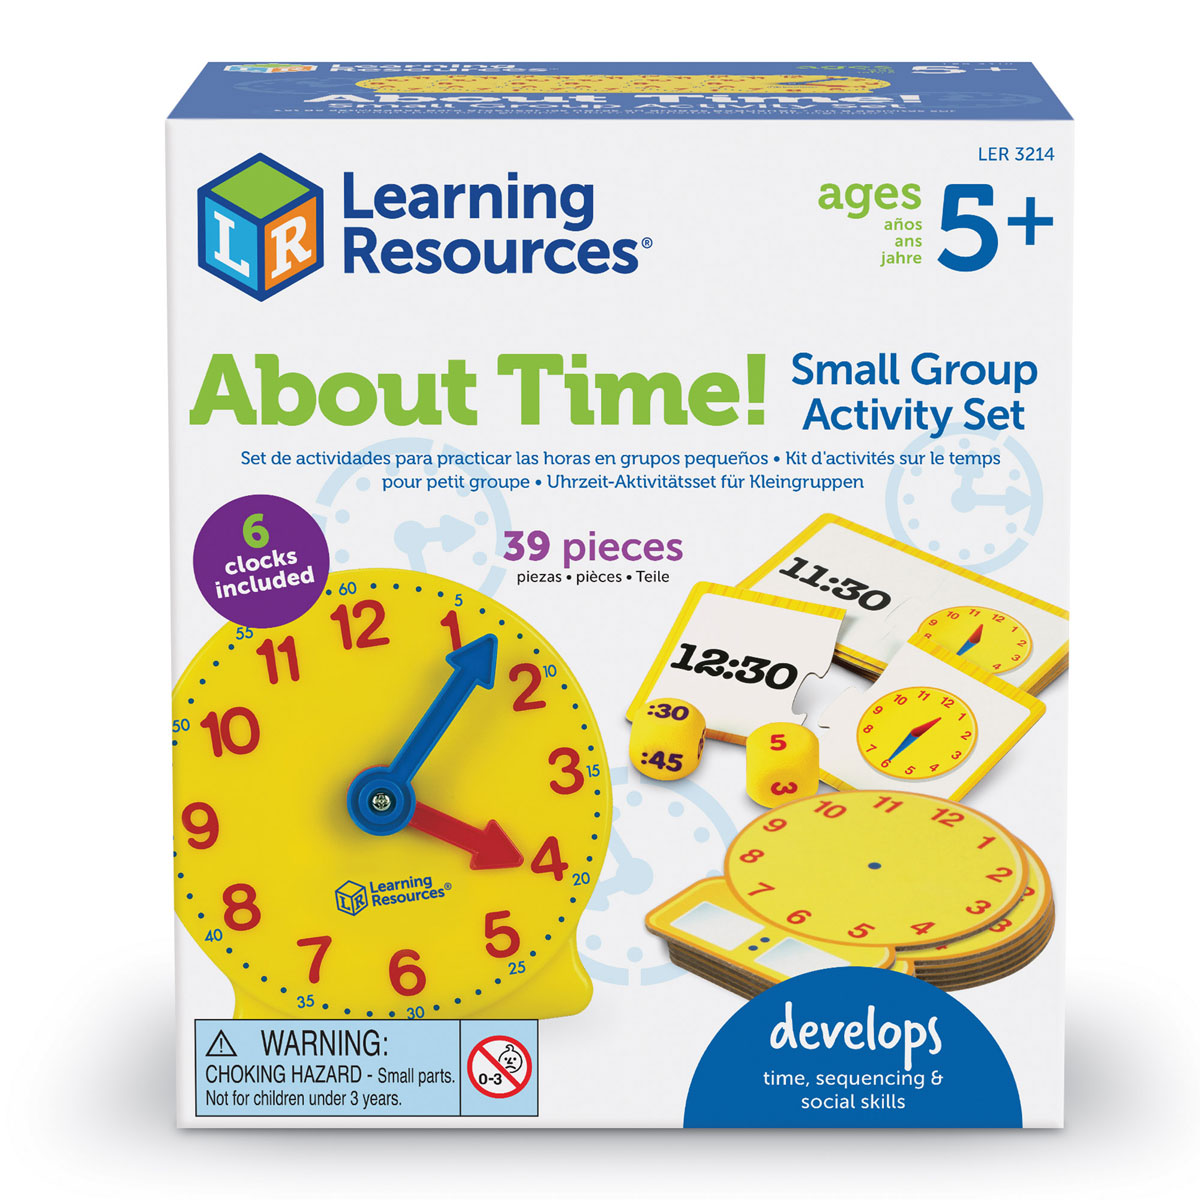 Игра обучение времени. Набор "Учимся определять время". Игра Learning time. Развивающий набор "время". Настольная игра чтобы научиться определять время.